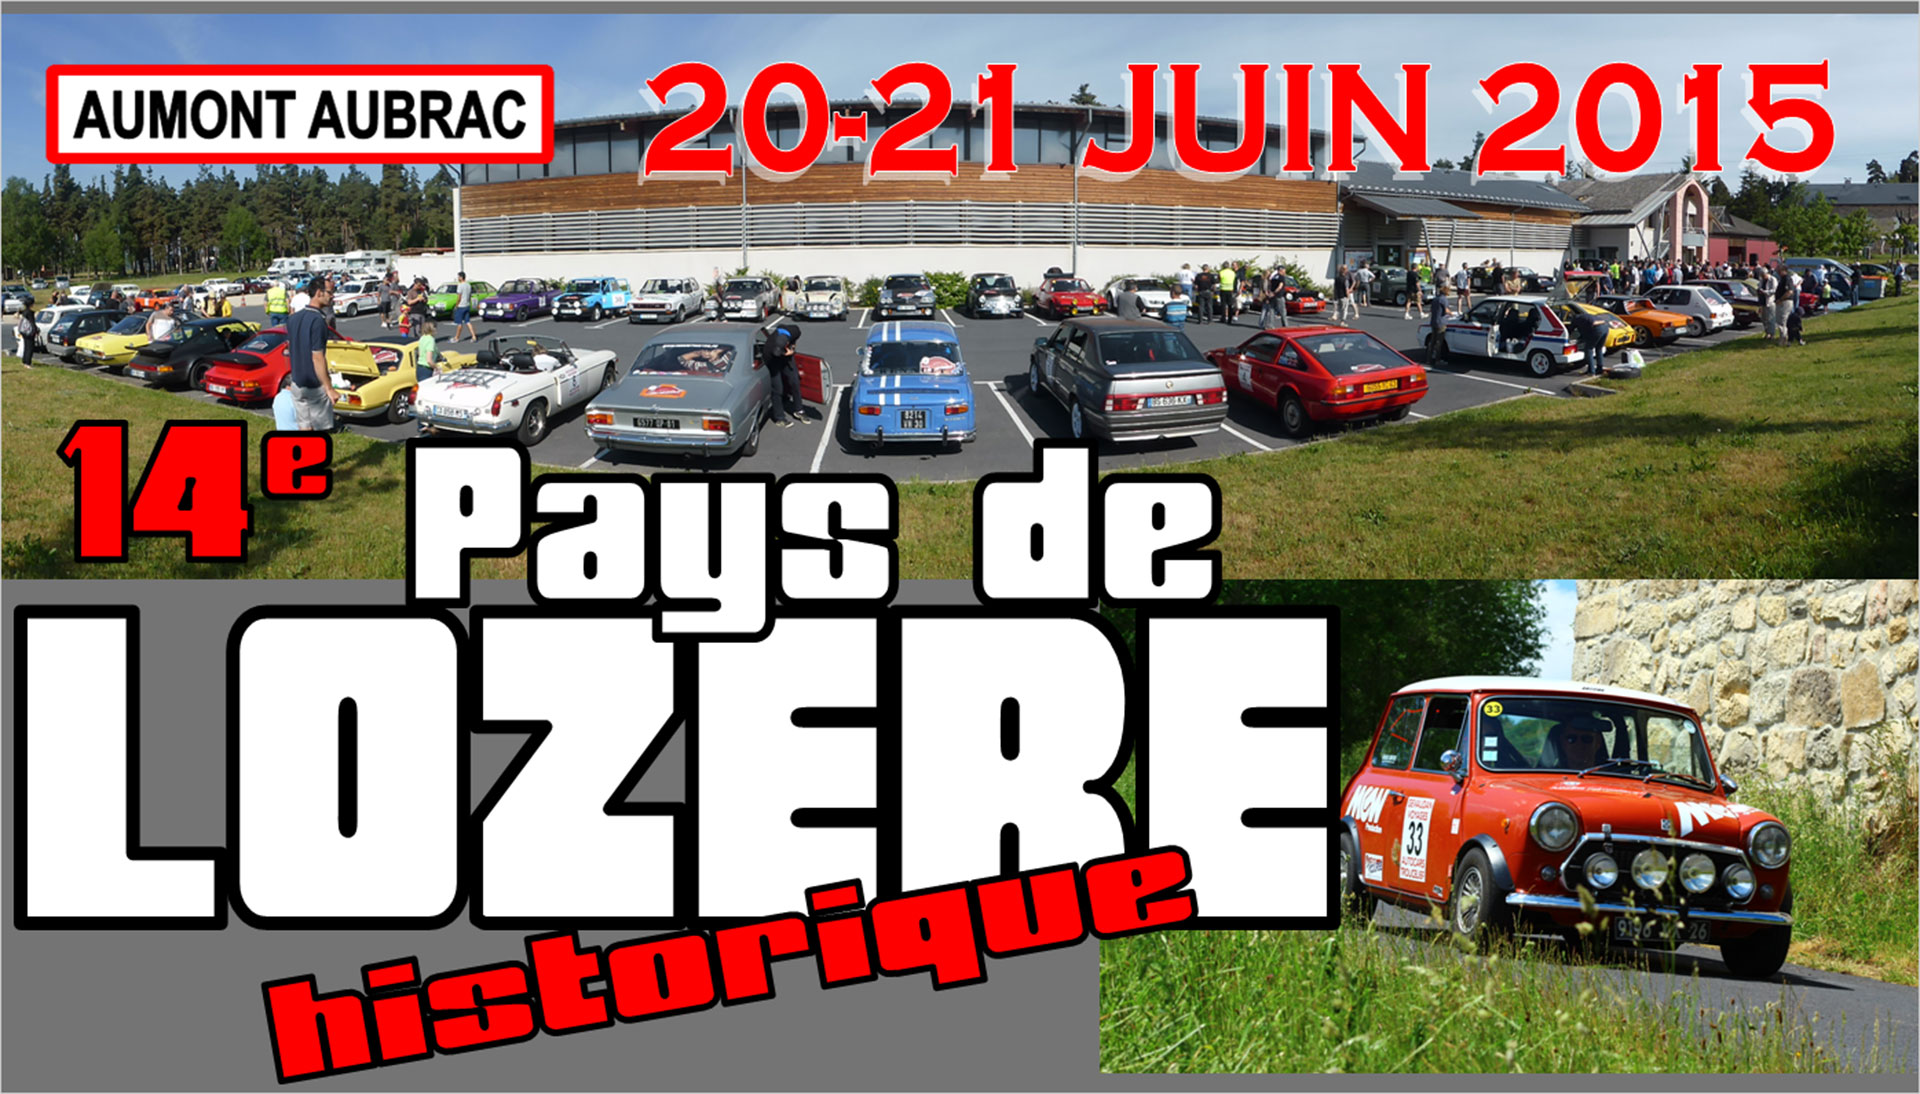 Rallye "Pays de Lozère Historique 2015"